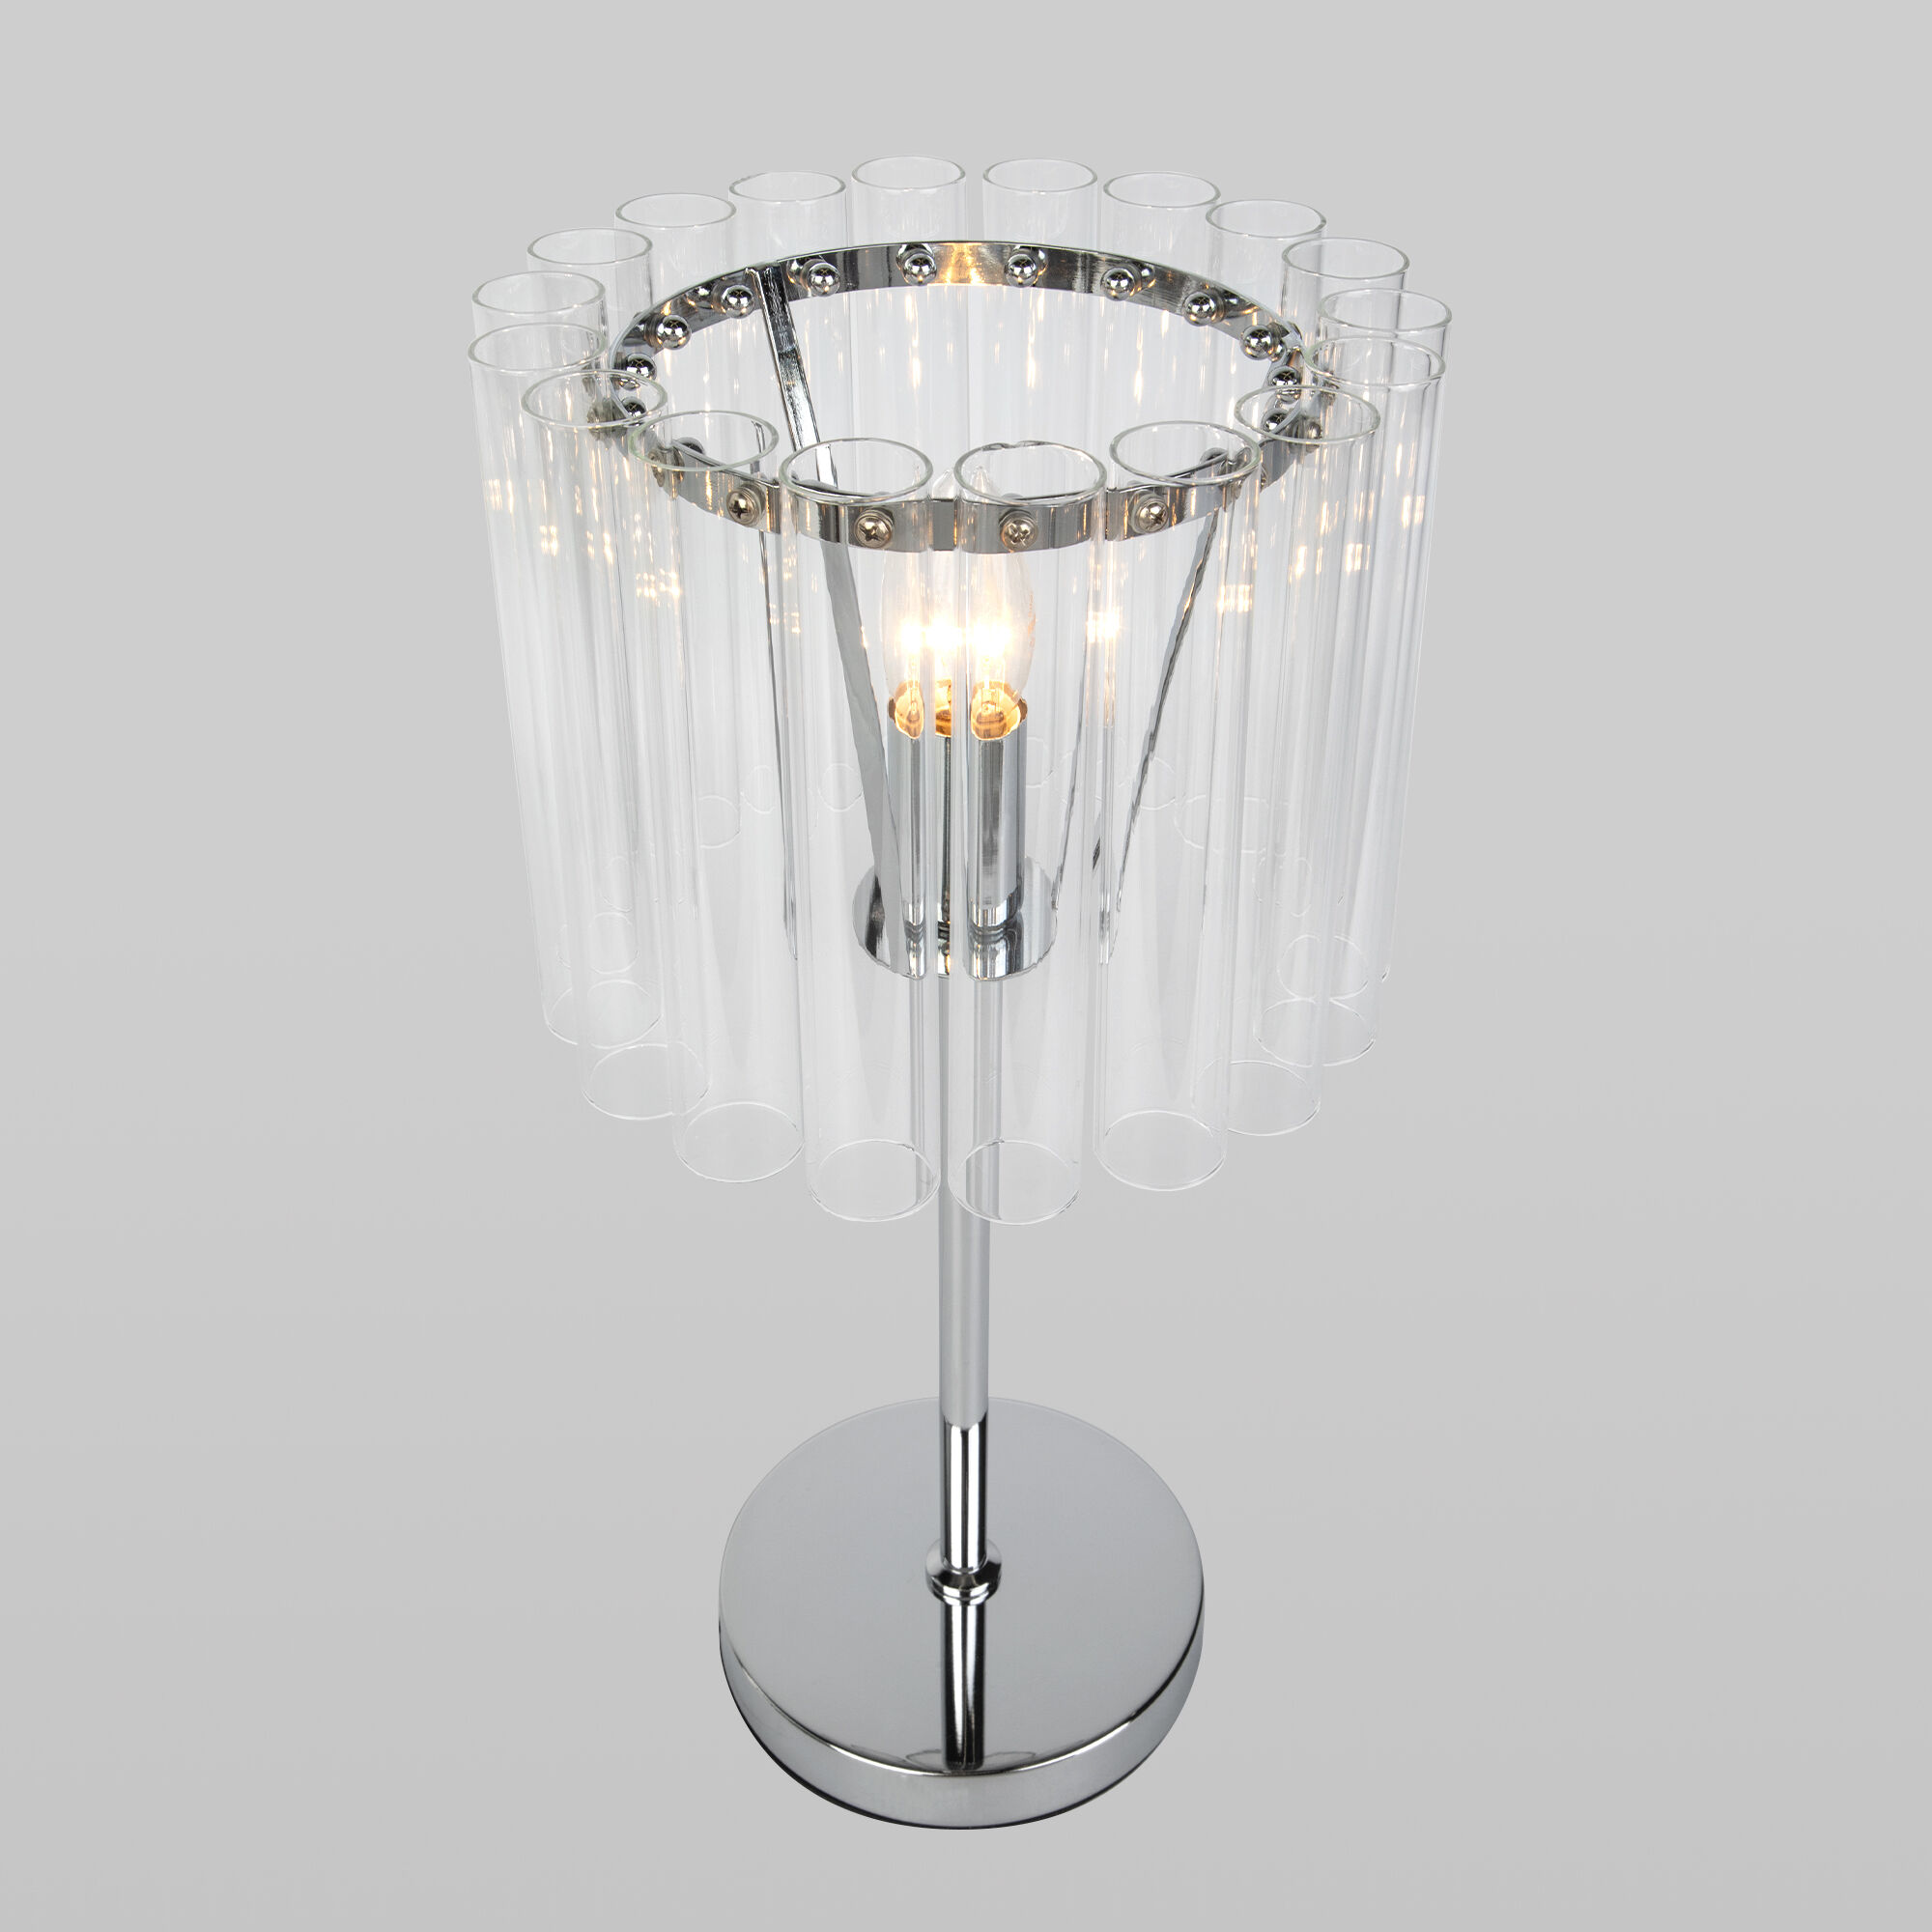 Настольный светильник со стеклянным плафоном Bogate's Flamel 01117/1 хром. Фото 3